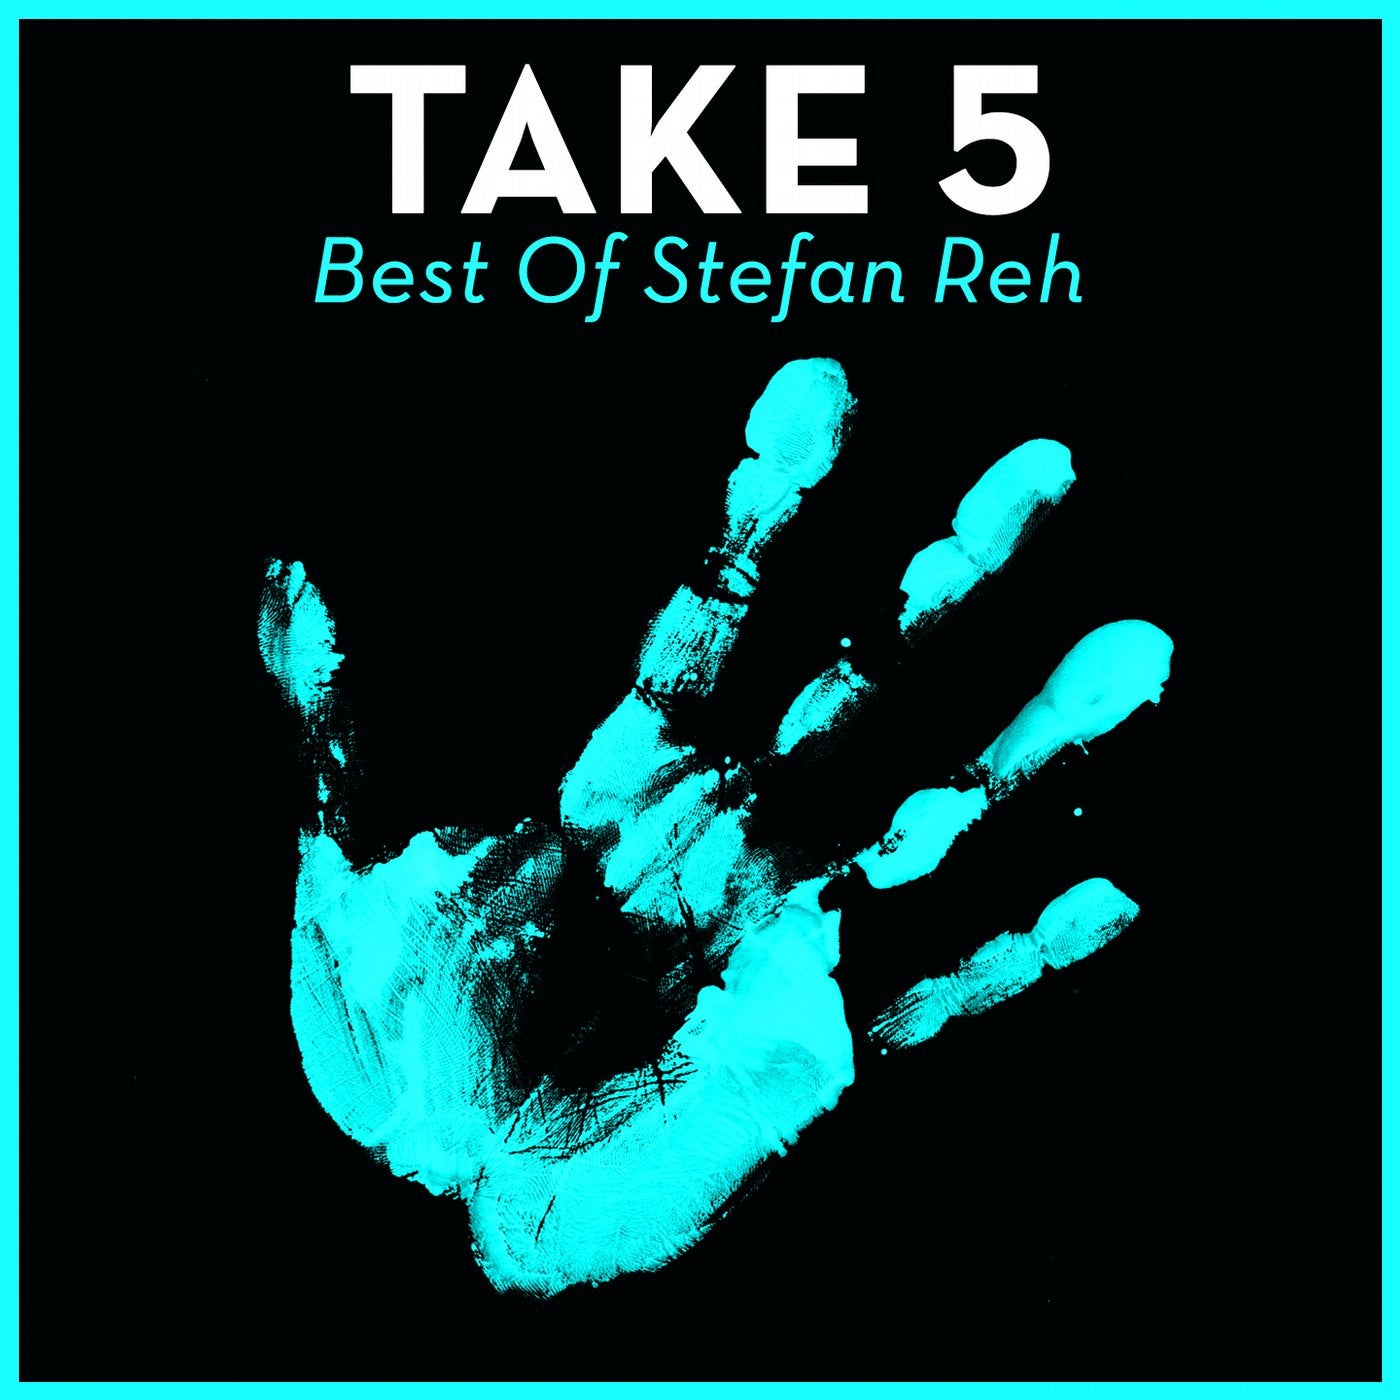 Take 5 - Best Of Stefan Reh